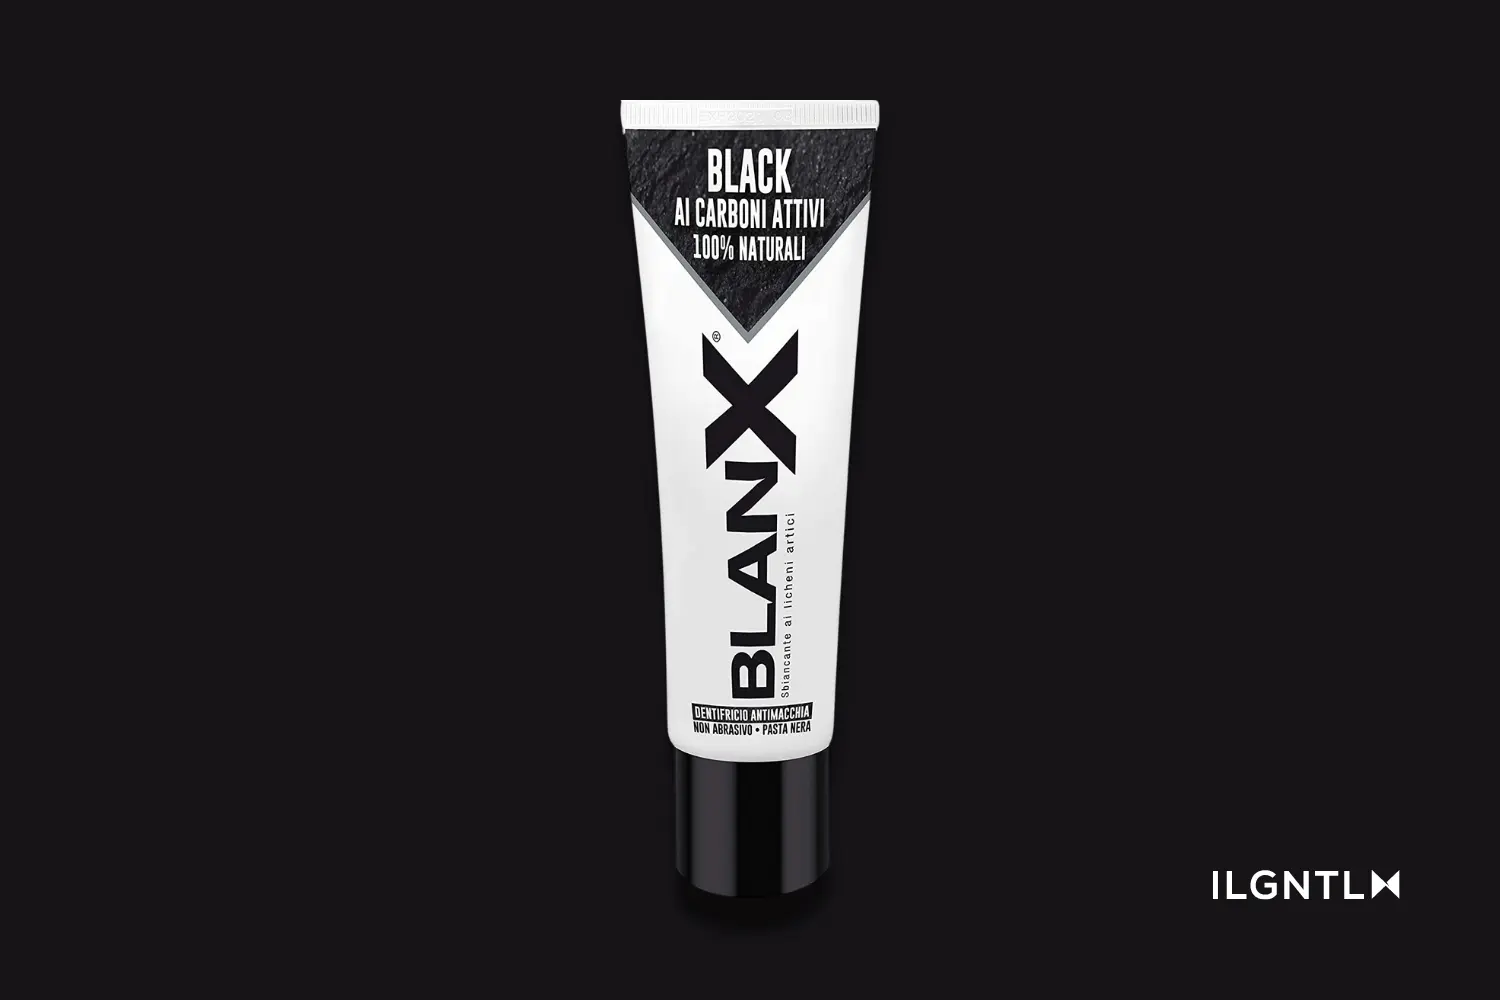 BlanX Classic Black con Carbone Attivo